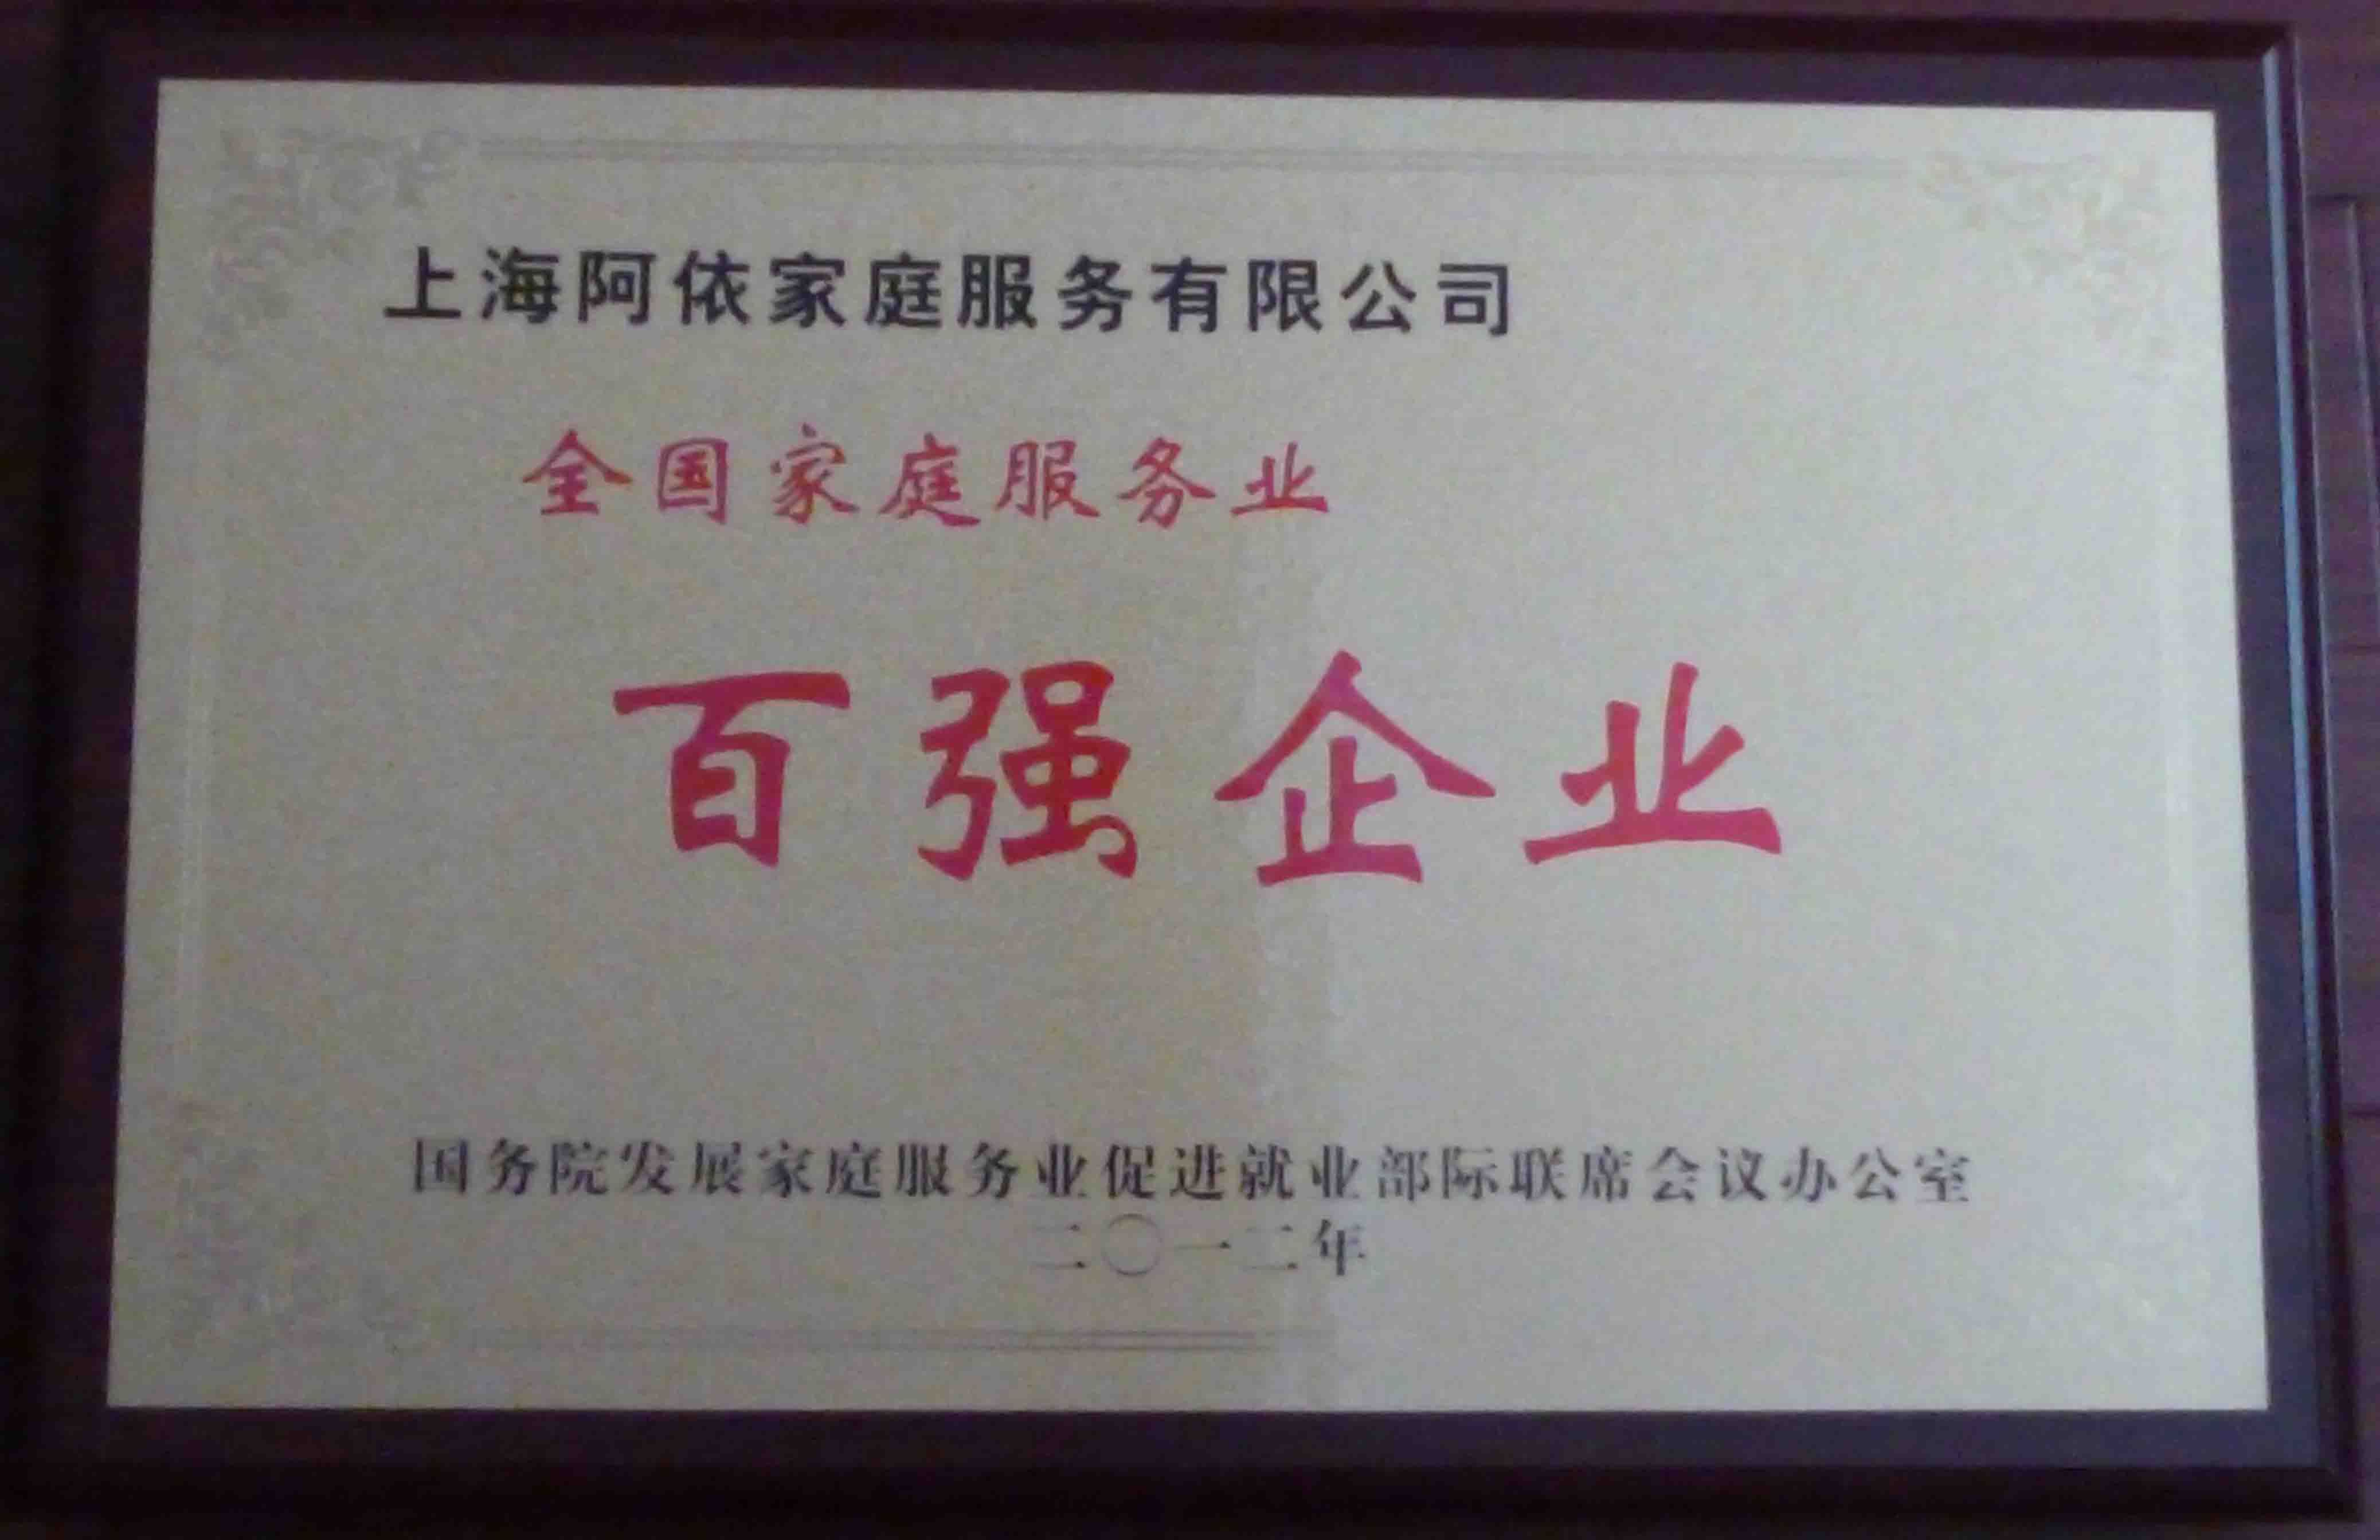 上海阿依家庭服务有限公司